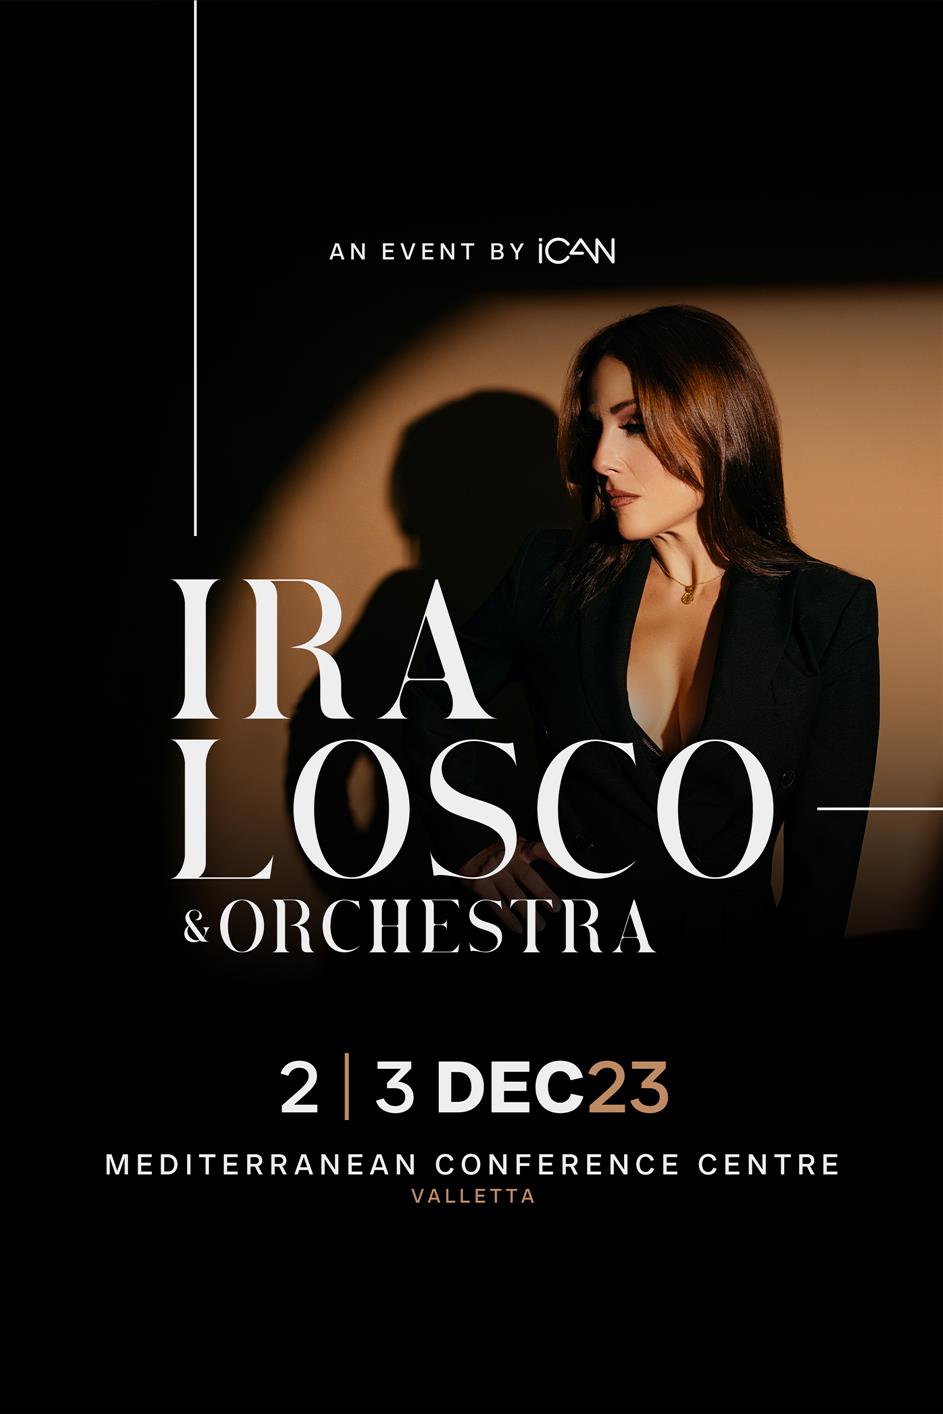 Ira Losco & Orchestra poster